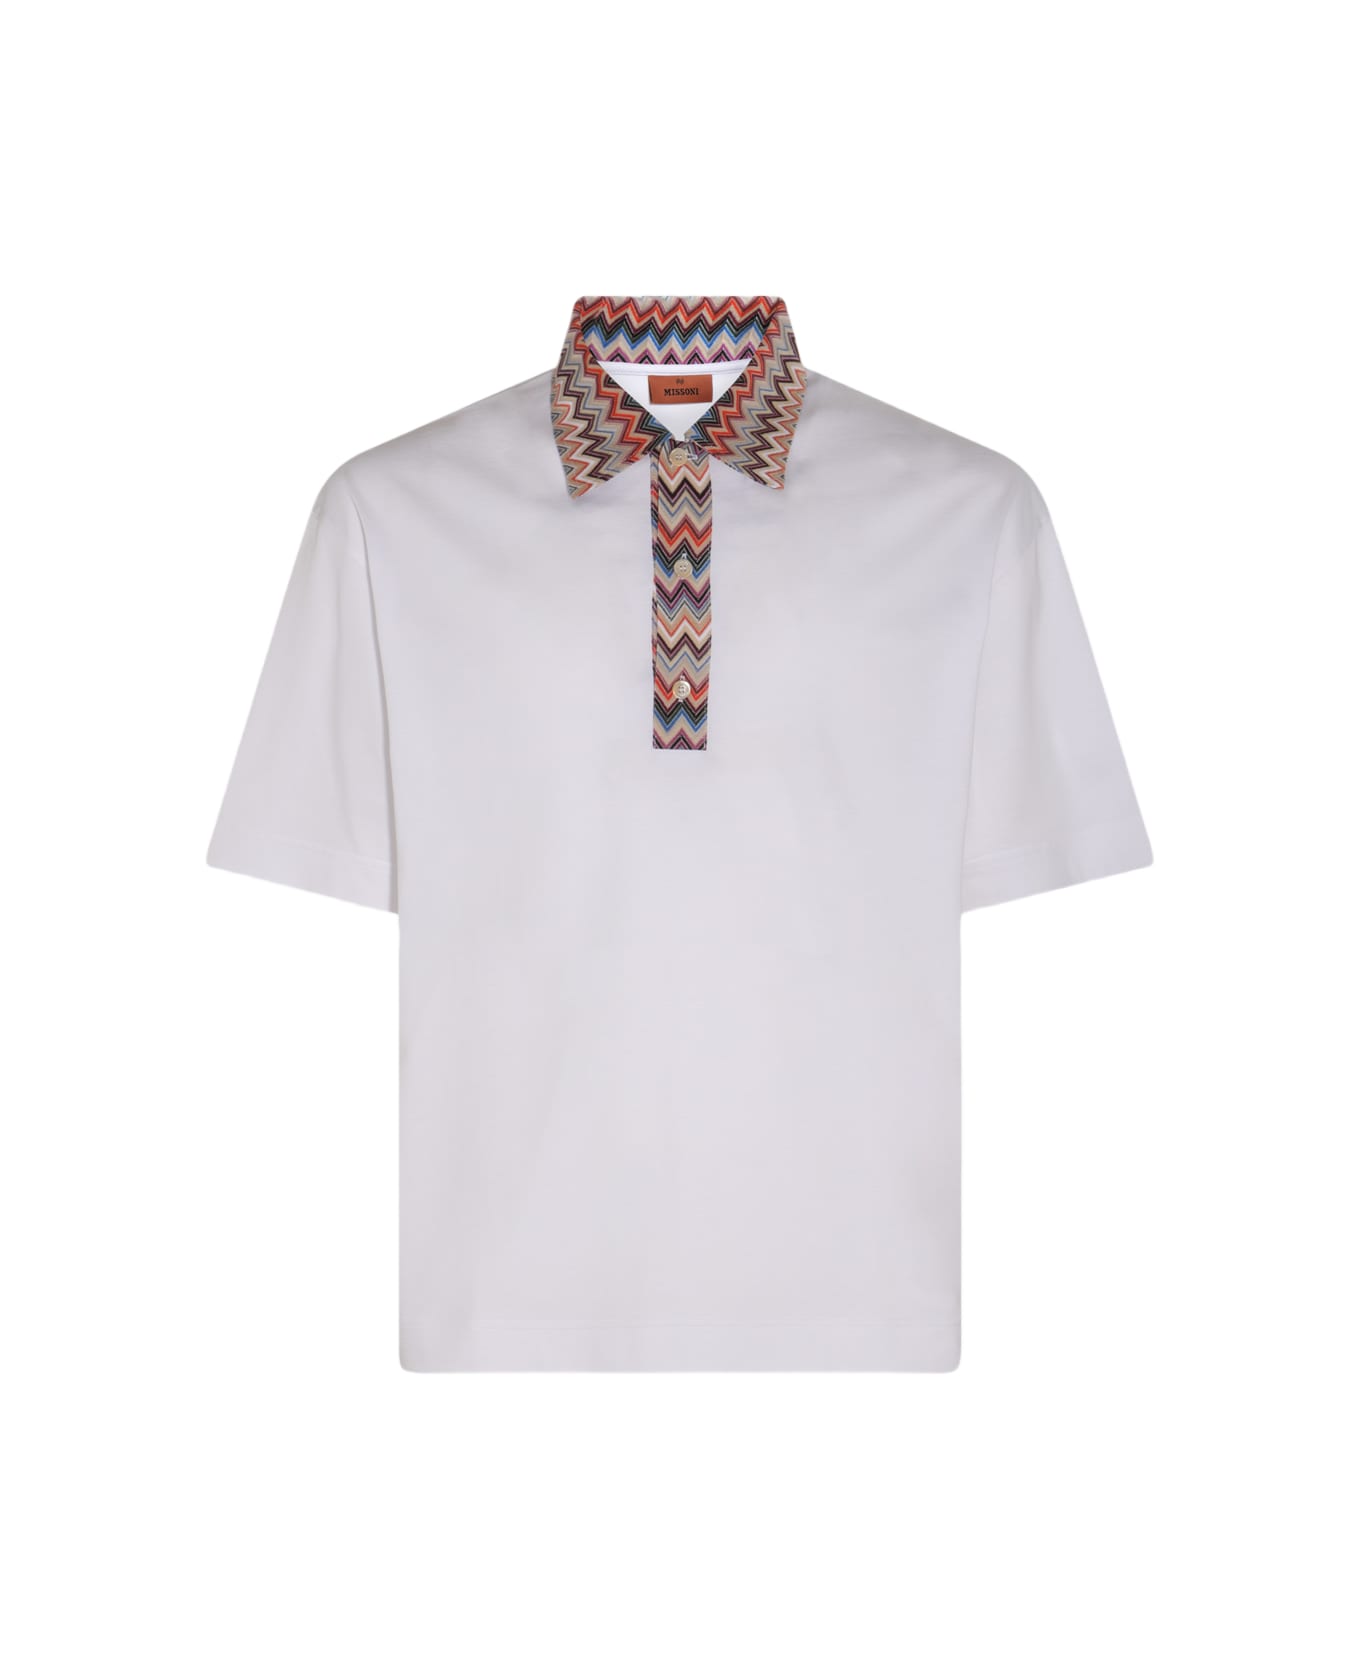 Missoni White And Multicolour Cotton Polo Shirt - WHITE AND MULTICOLOR